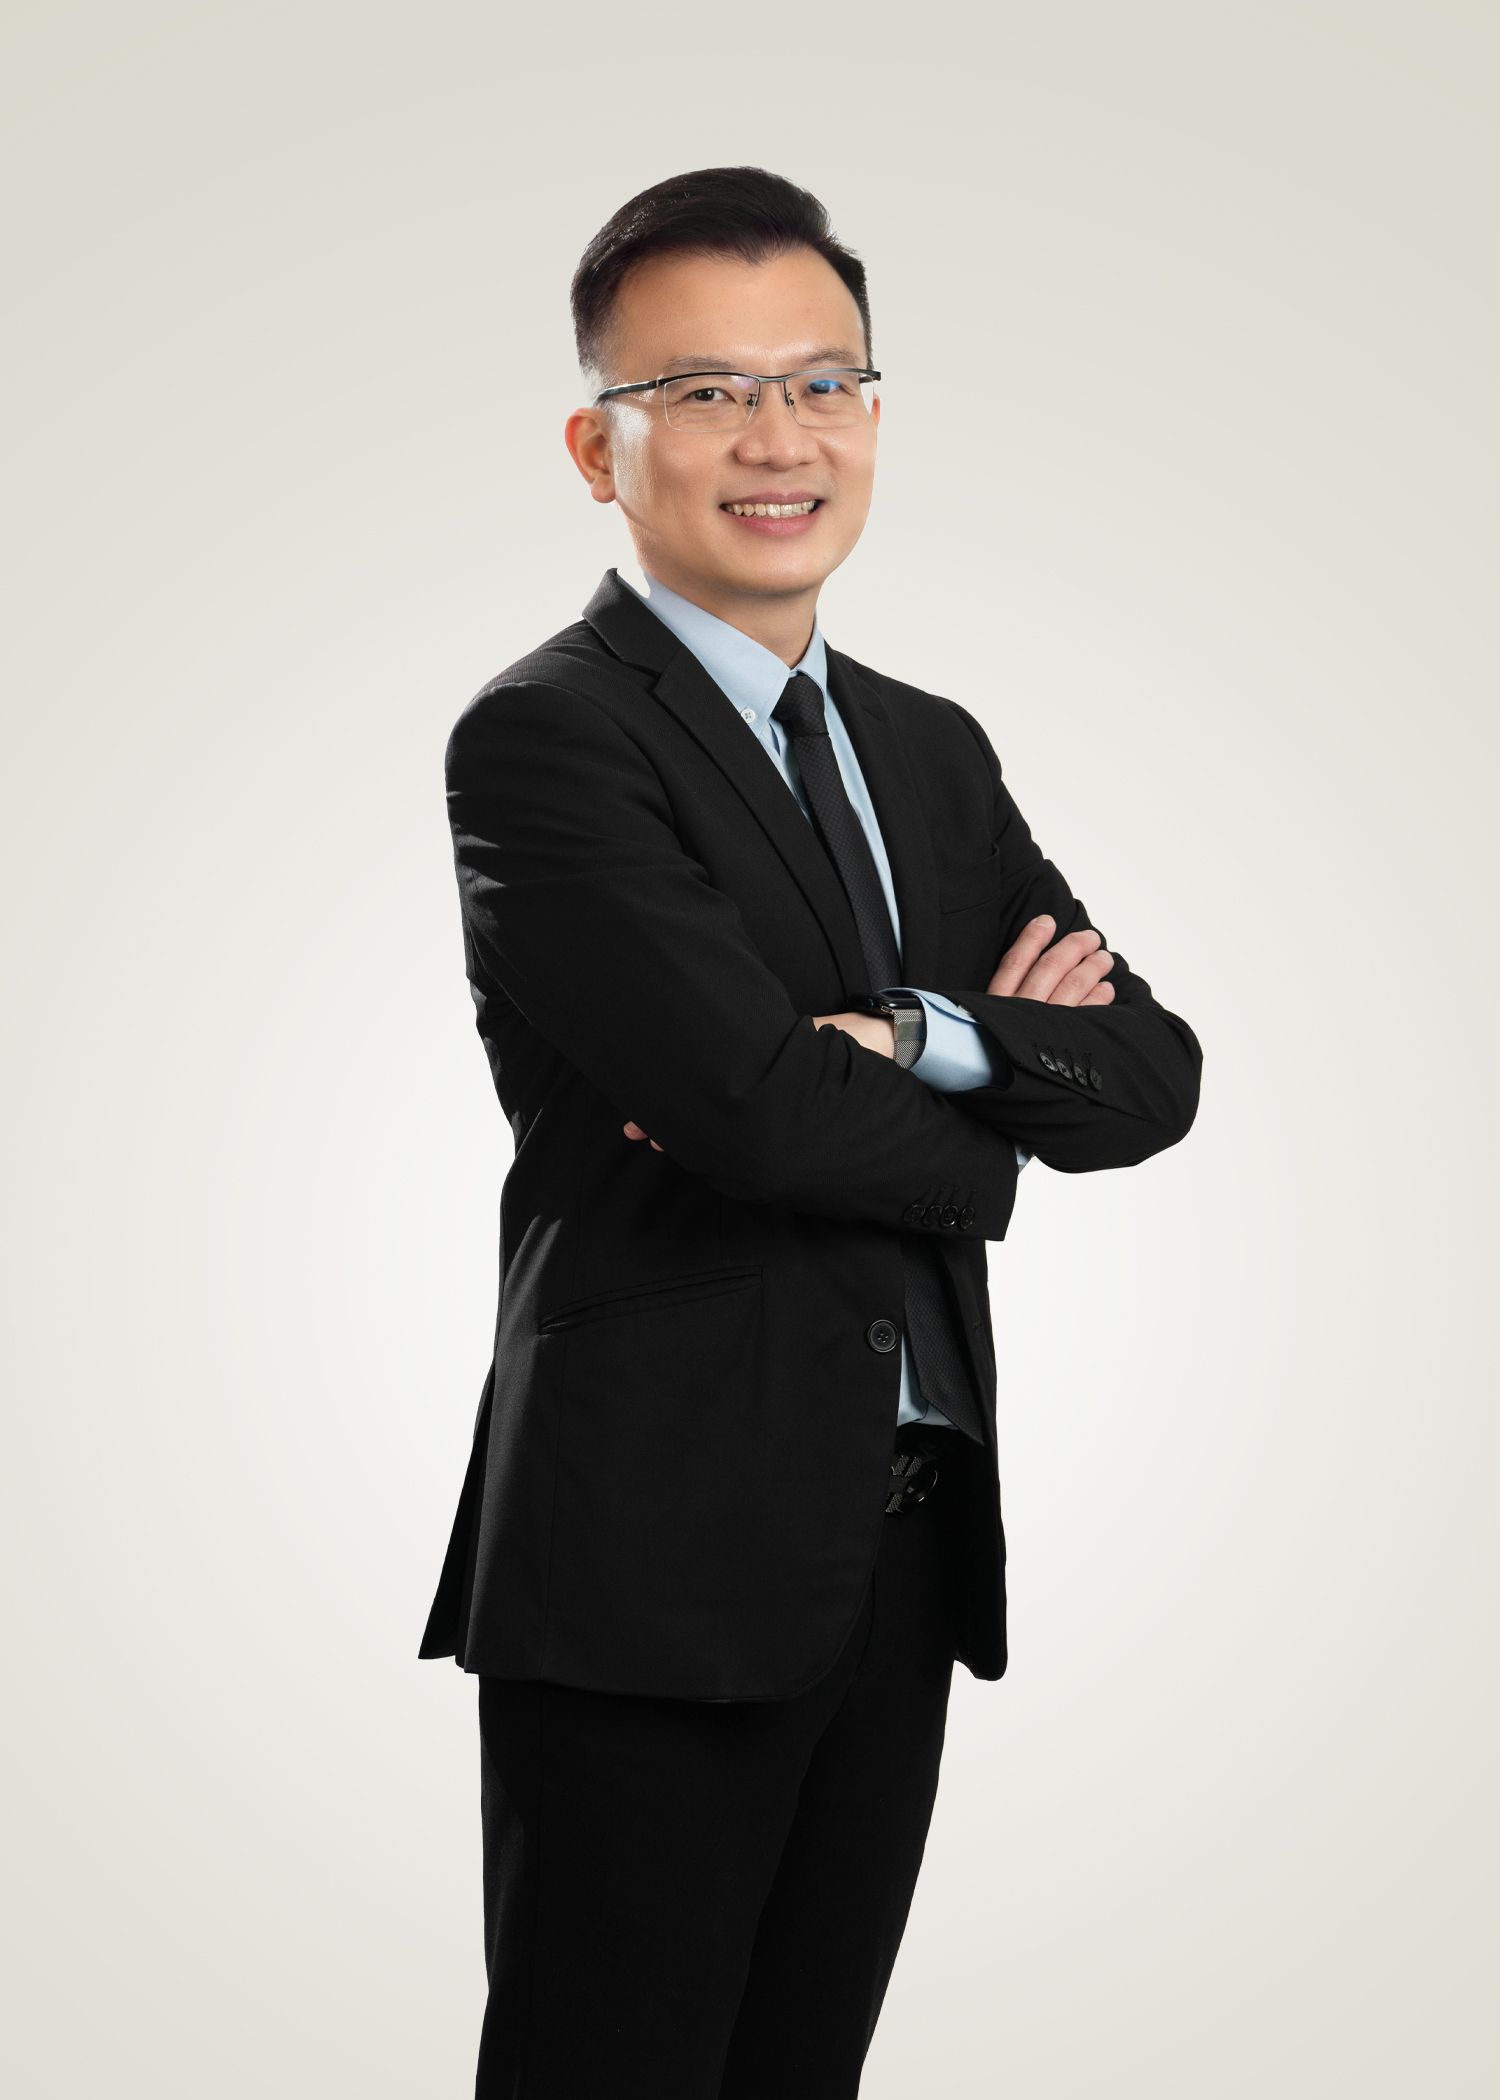 กรรมการผู้จัดการ DC Healthcare ดร. Chong Tze Sheng